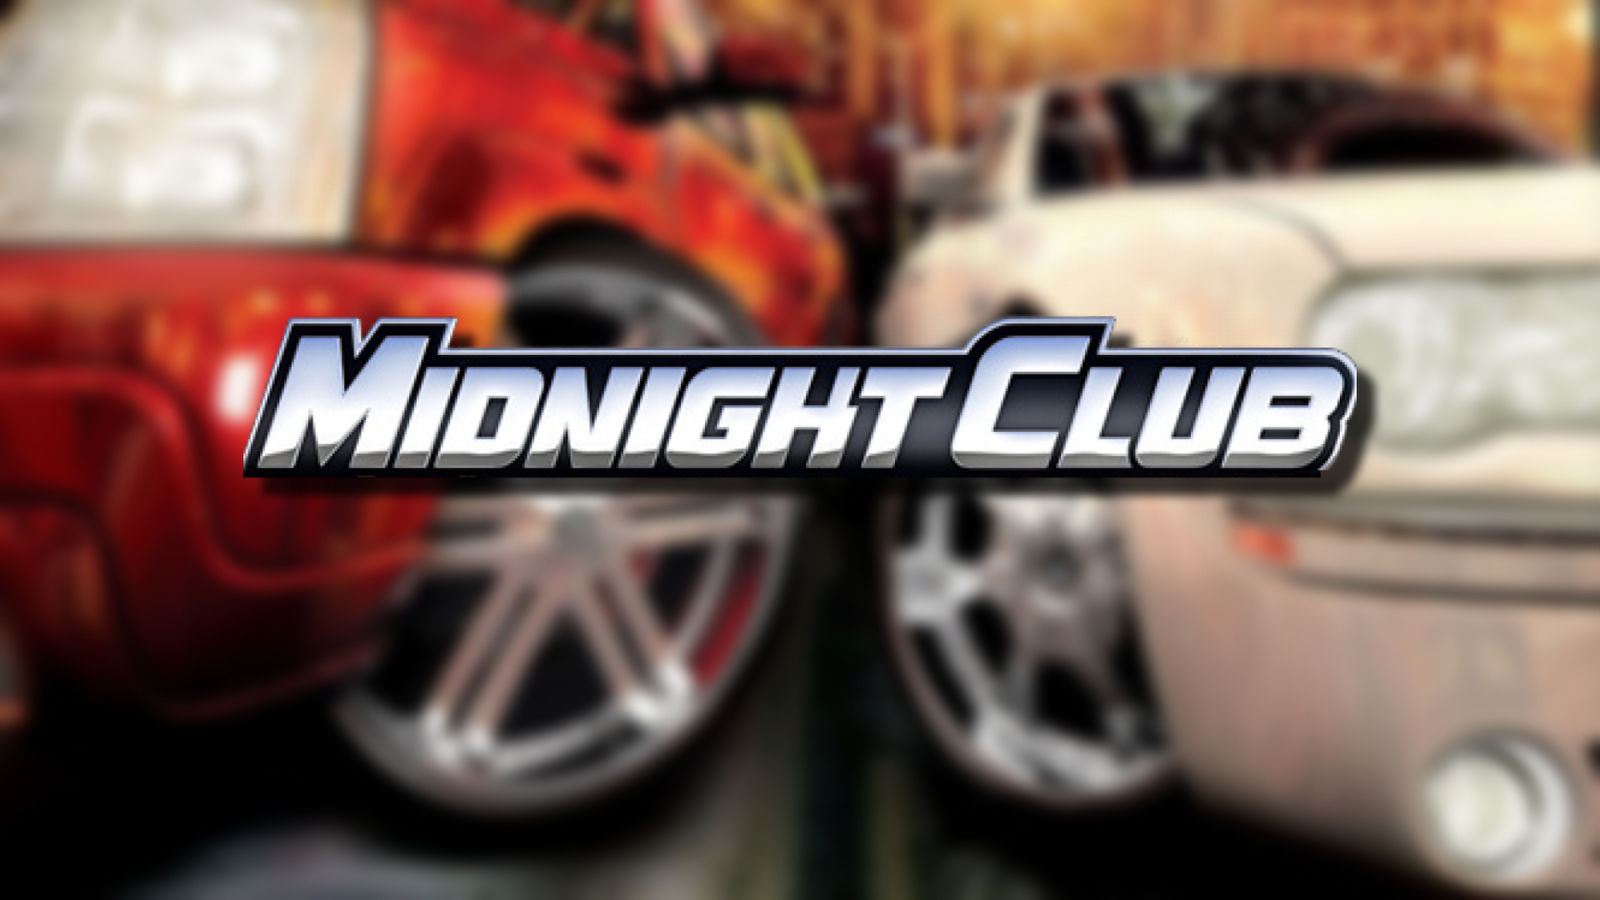 Pokud se Midnight Club vrátí, bylo na čase - Take-Two sedí na klenotu franšízy